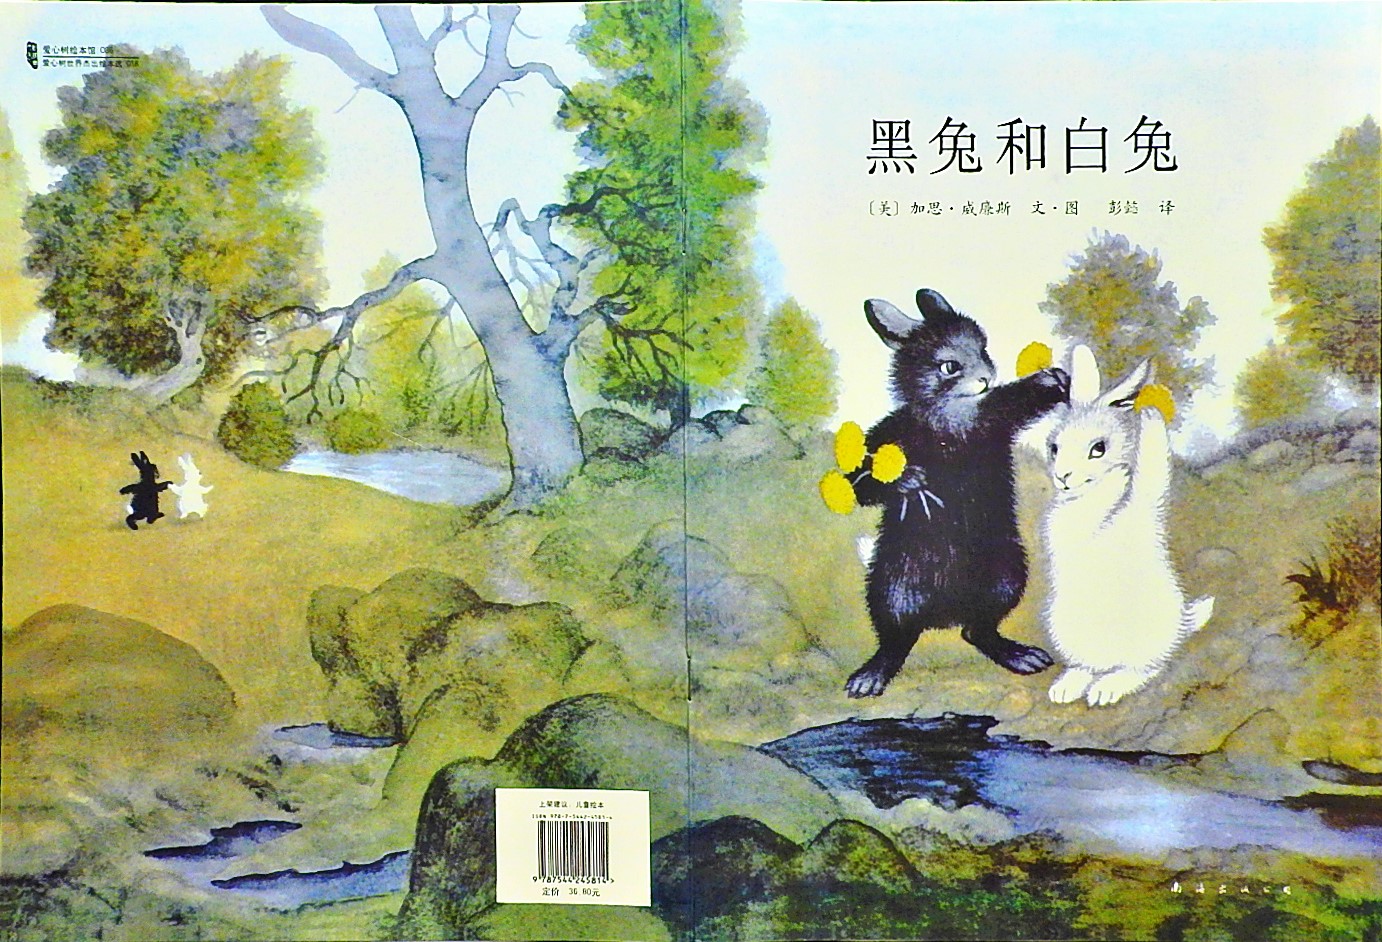 黑兔和白兔 (01),绘本,绘本故事,绘本阅读,故事书,童书,图画书,课外阅读